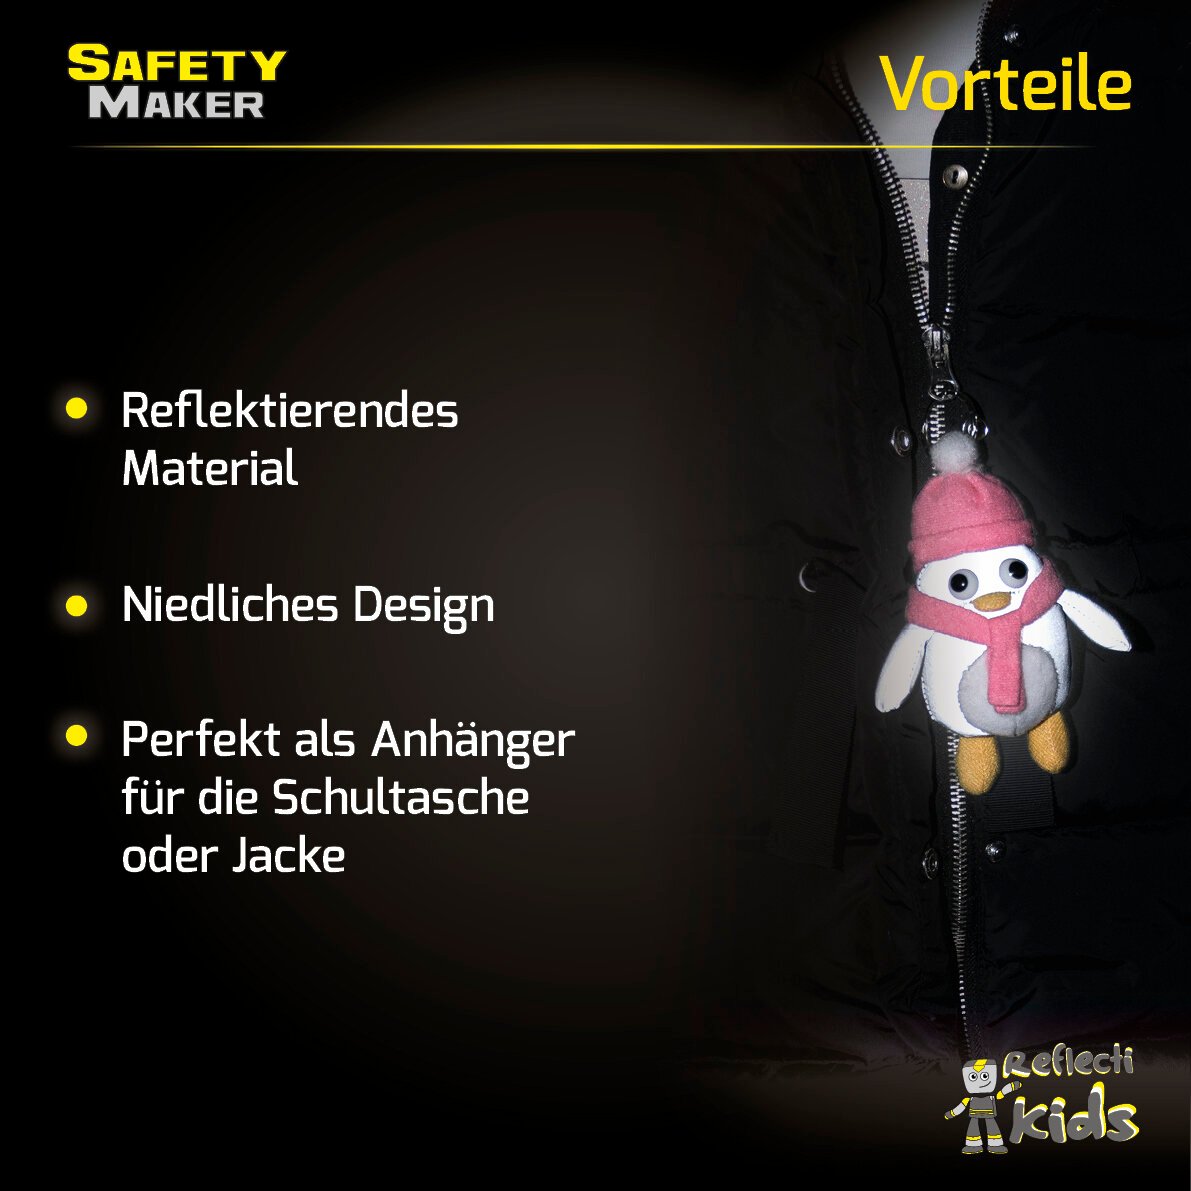 Safety Maker Soft Anhänger Pingu silber reflektierend